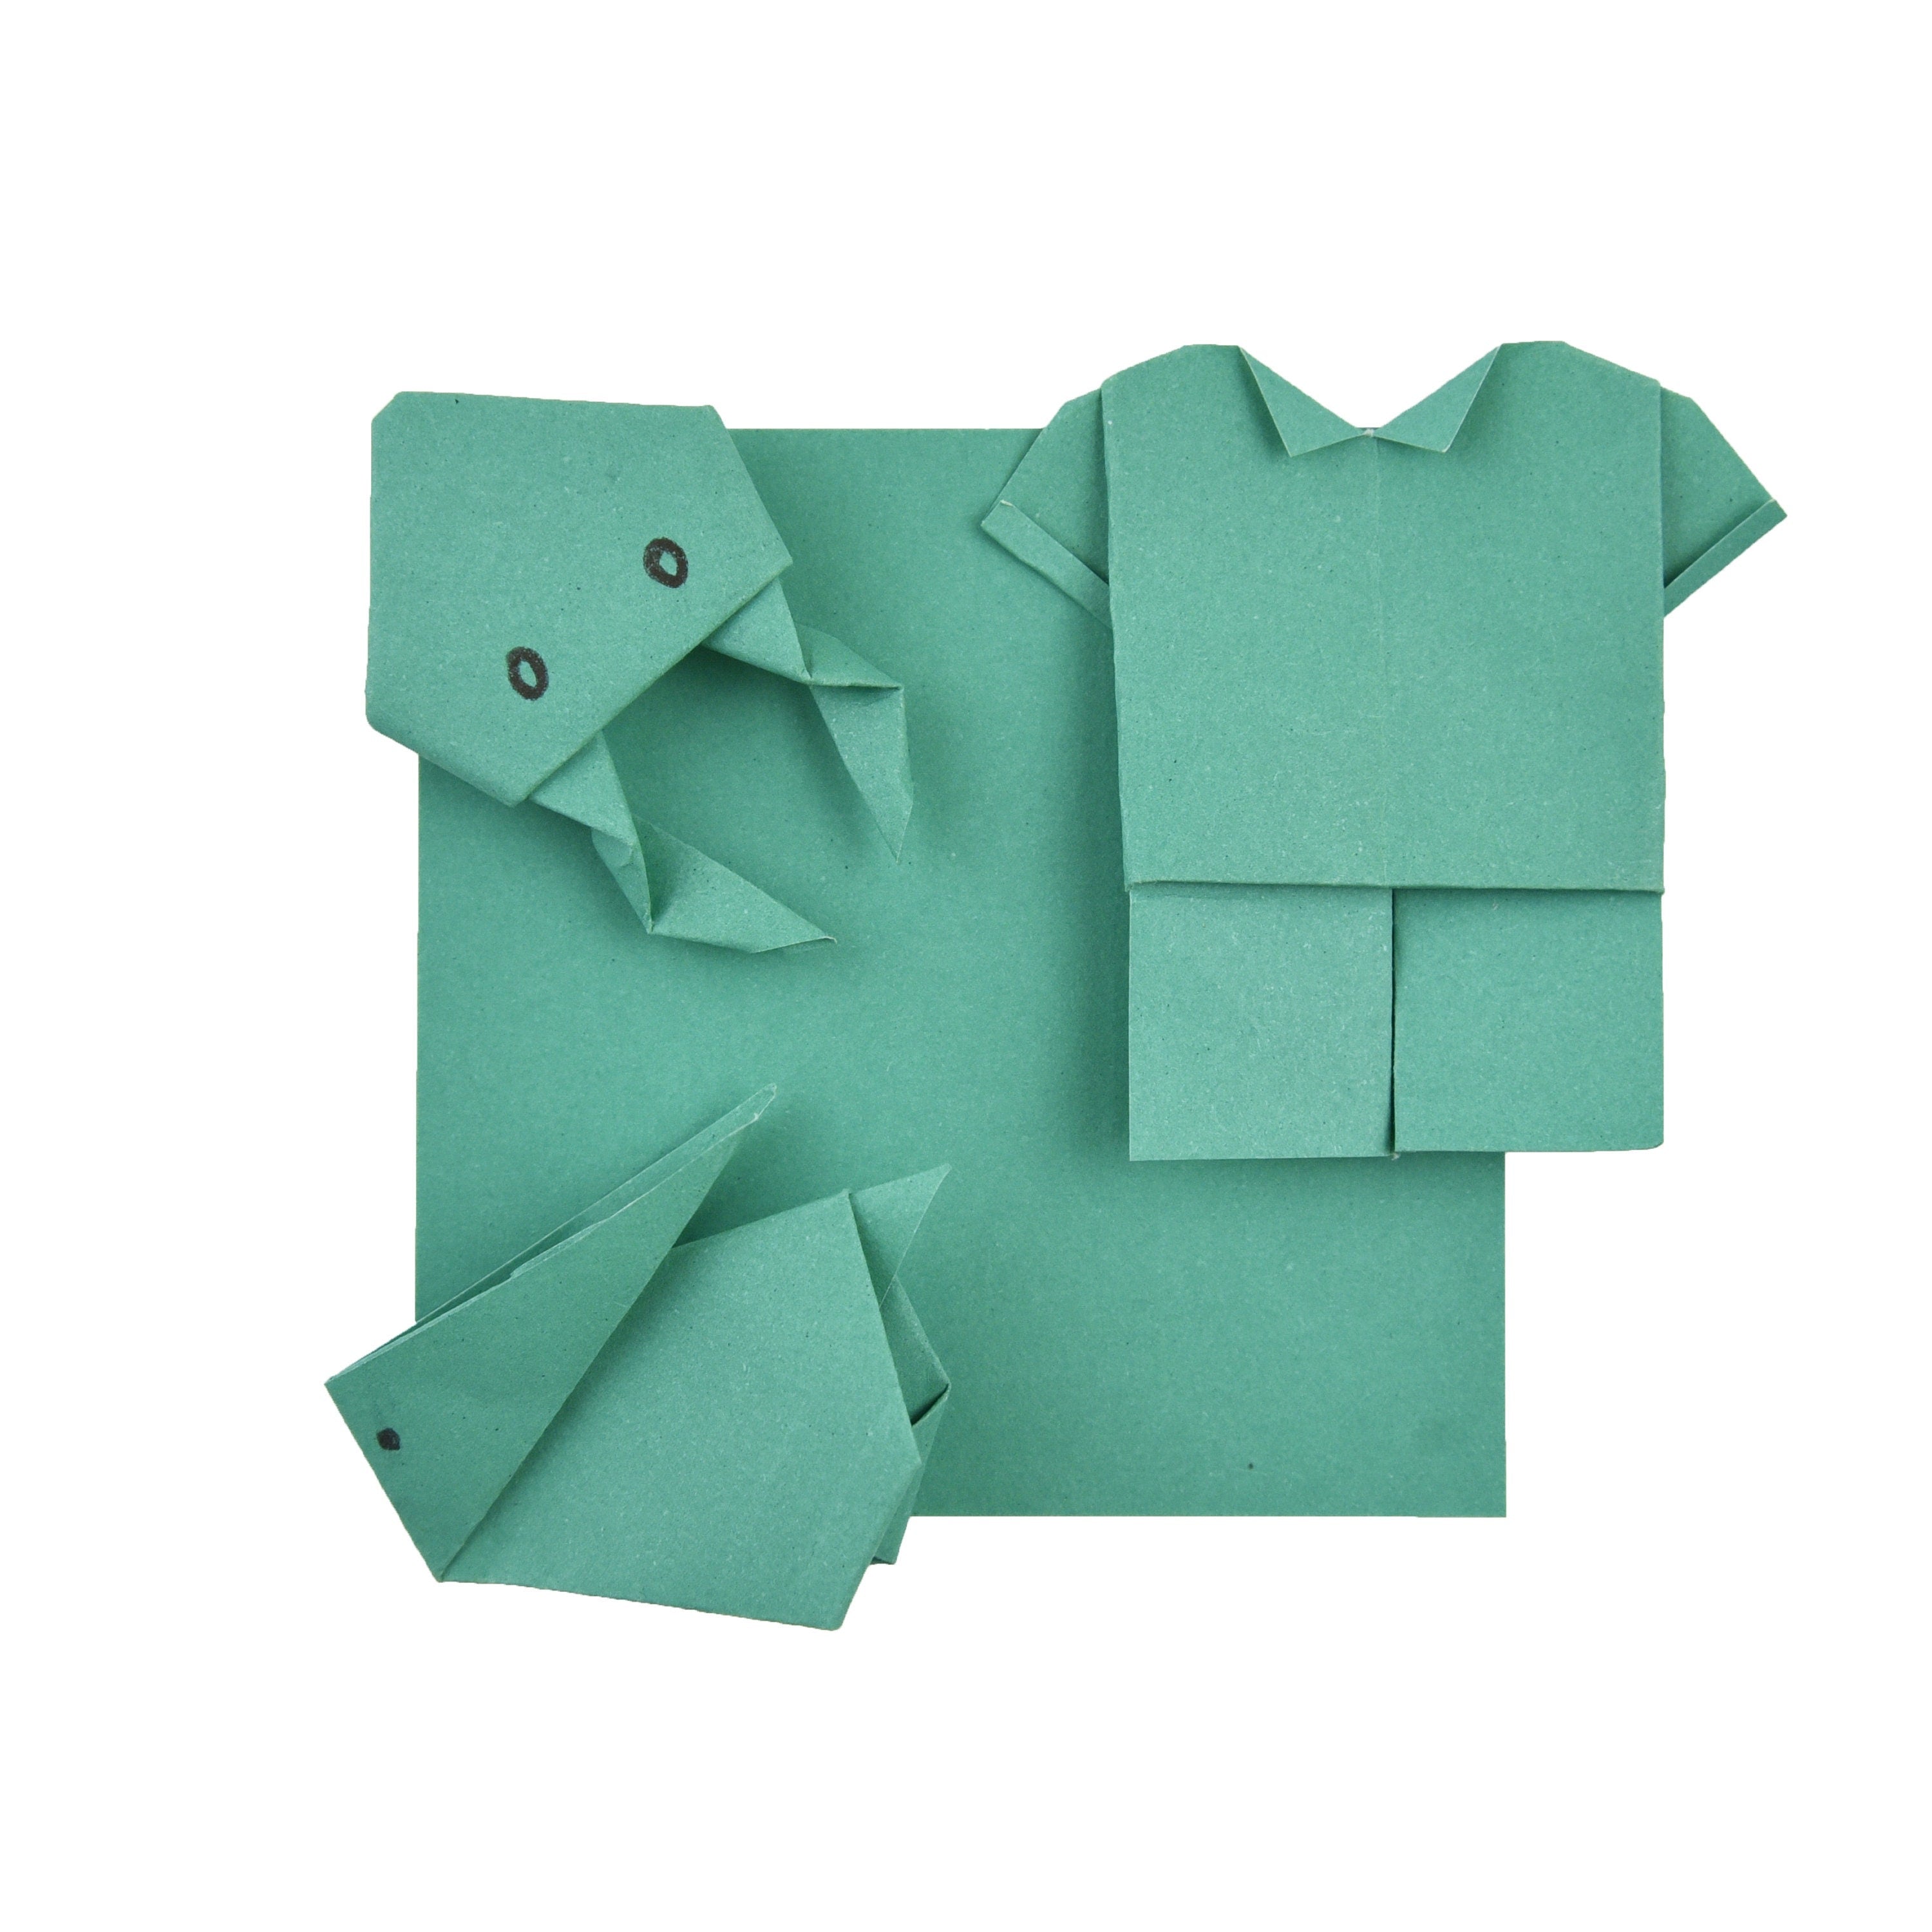 100 Hojas de Papel Origami - 6x6 pulgadas - Paquete de Papel Cuadrado para Plegar, Grullas de Origami y Decoración - S21